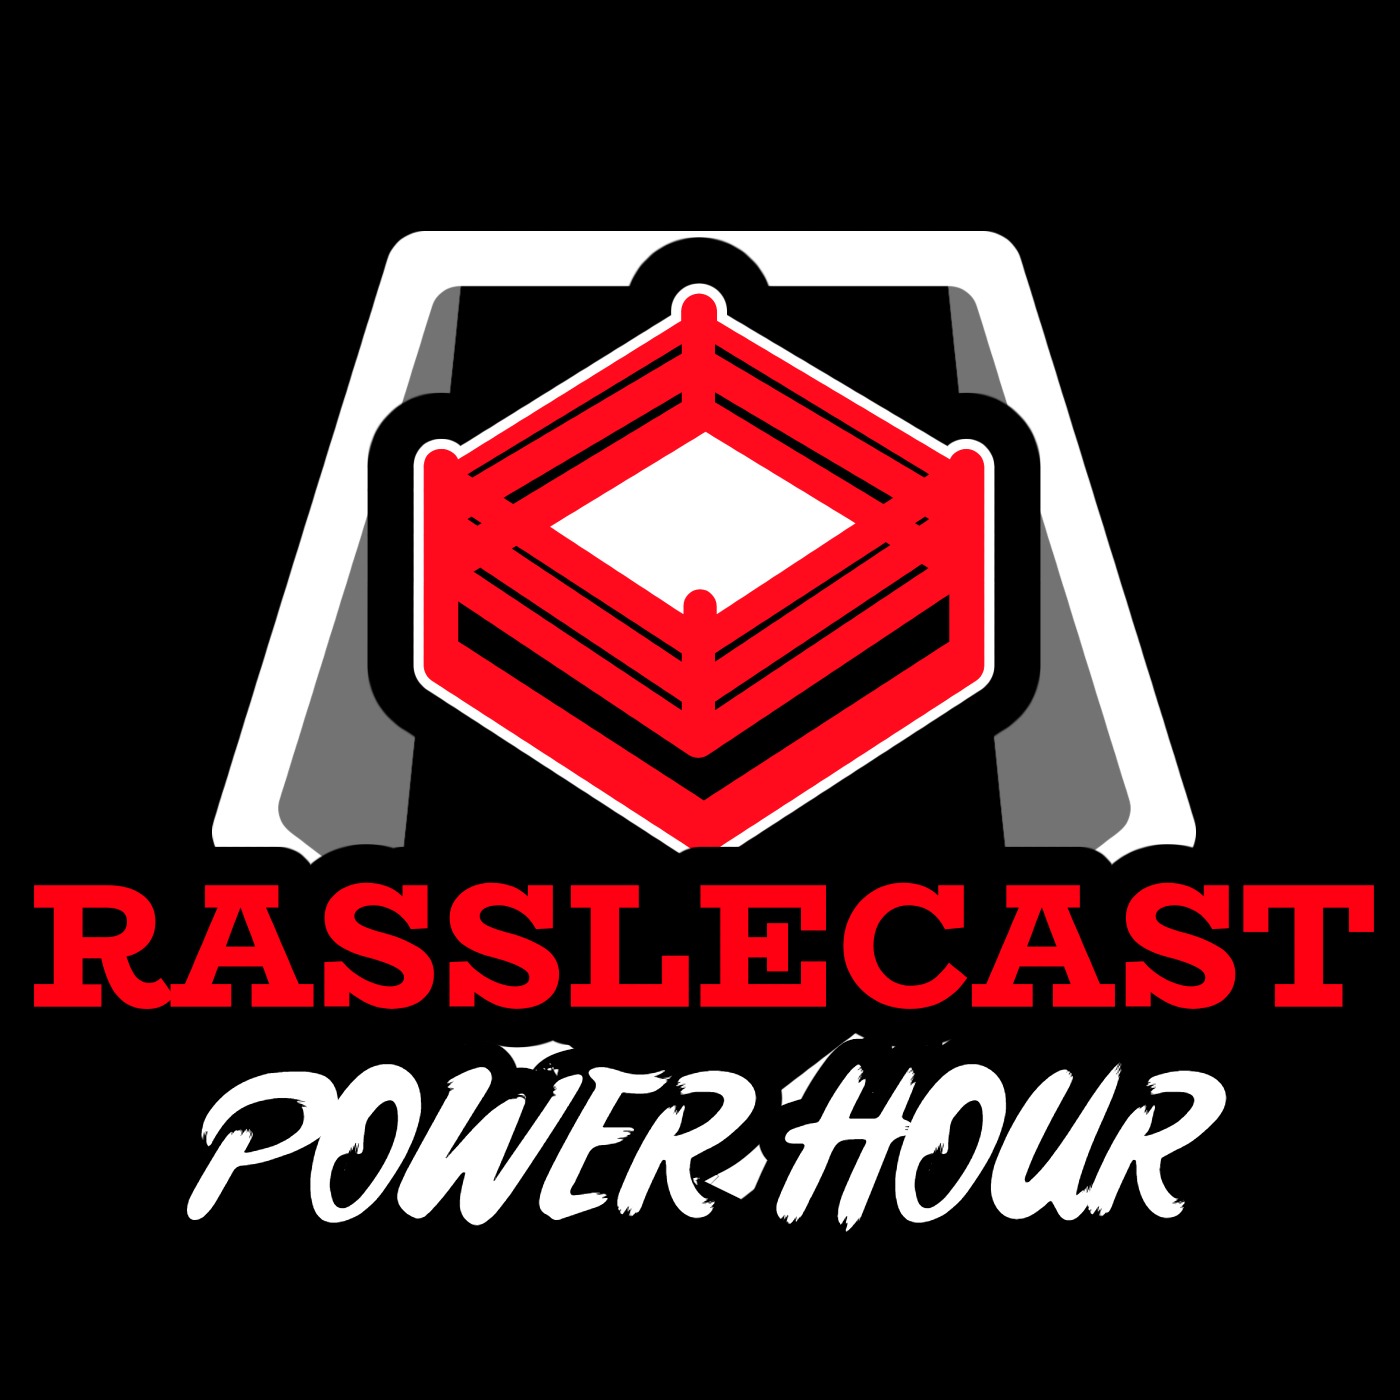 Rasslecast Power Hour Album Art